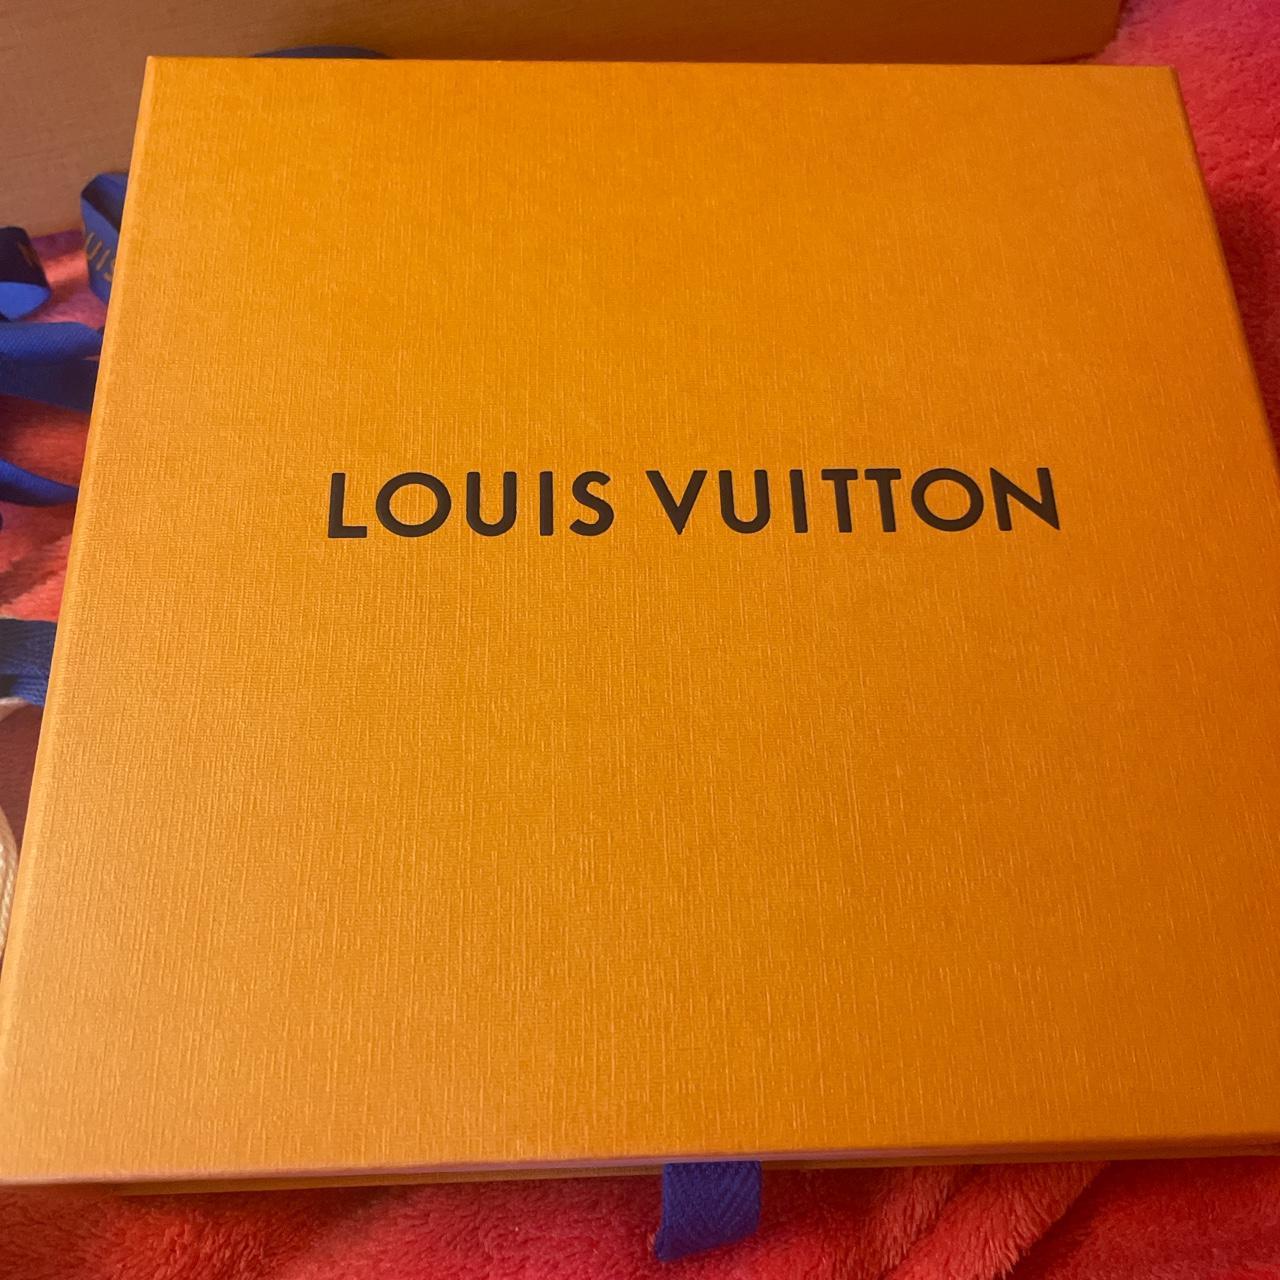 Louis Vuitton LOUIS VUITTON VIRGIL ABLOH HOLOGRAM REVERSIBLE LEATHER BELT